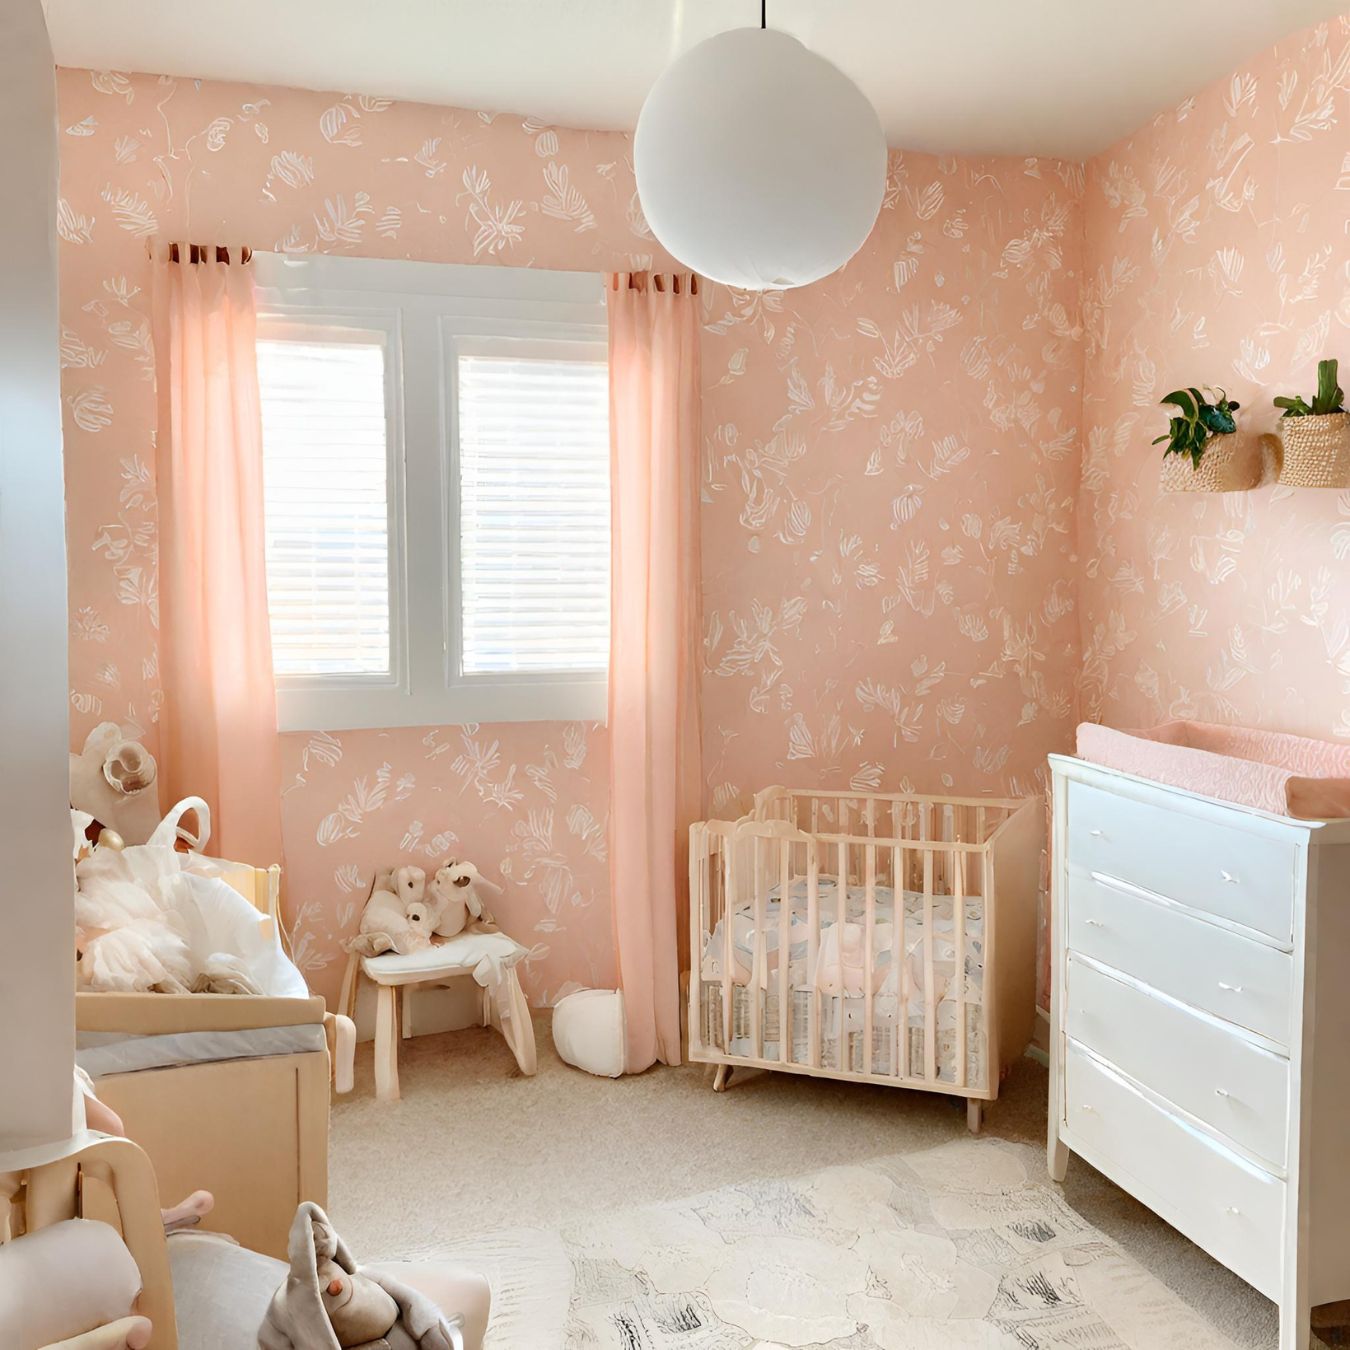 tapeta do pokoju dziecka - jaką wybrać - blog babyrooms